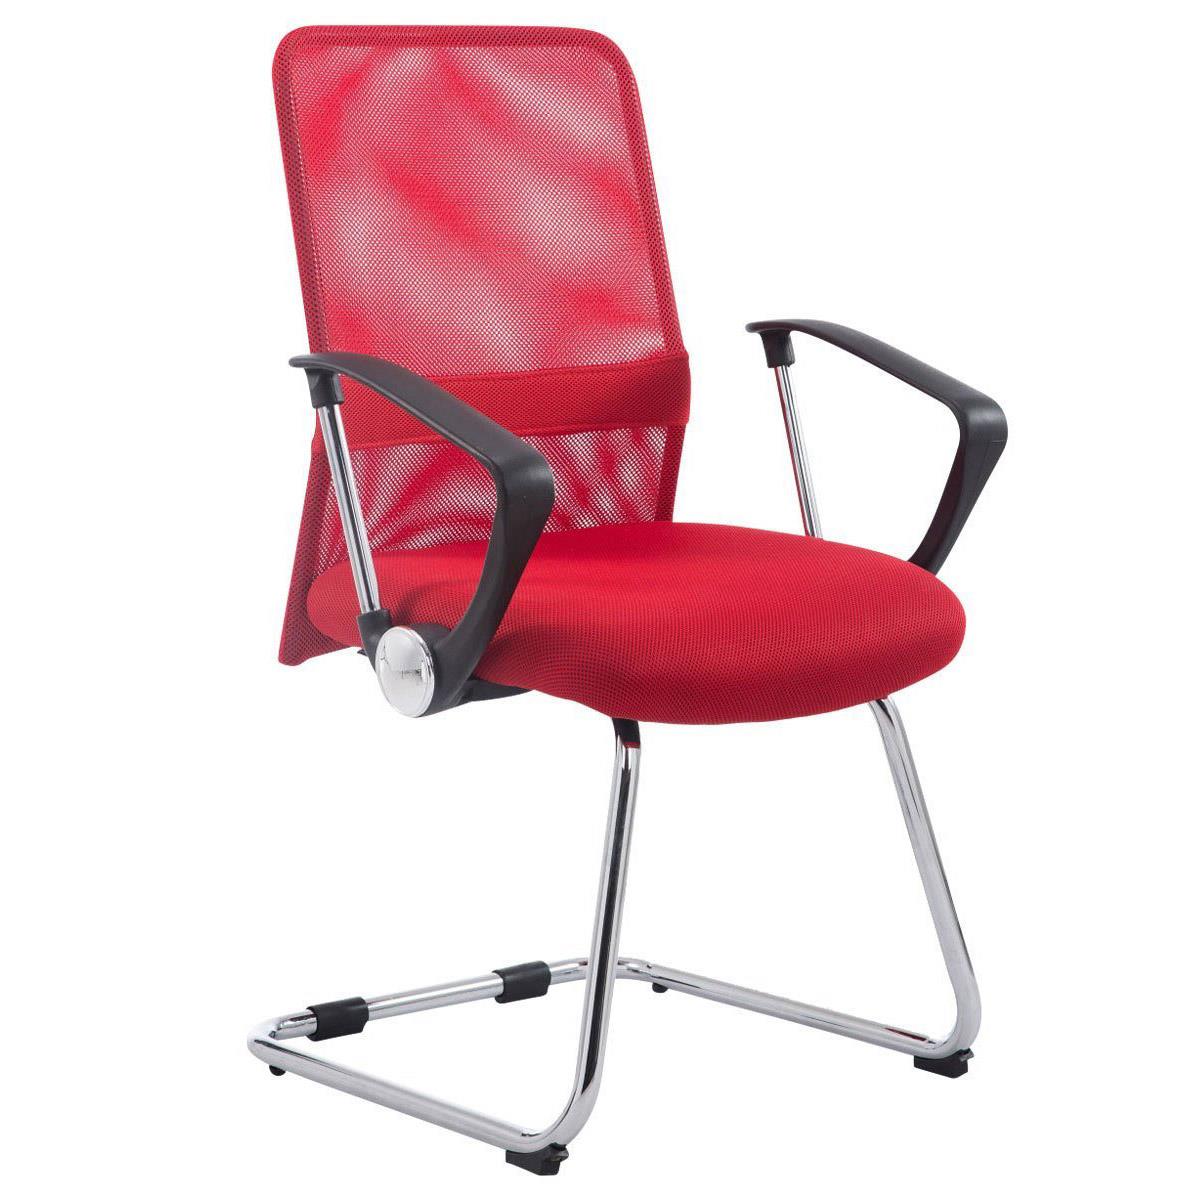 Cadeira de Visita ASPEN V, Assento Acolchoado, Em Malha Respirável, Cor Vermelho